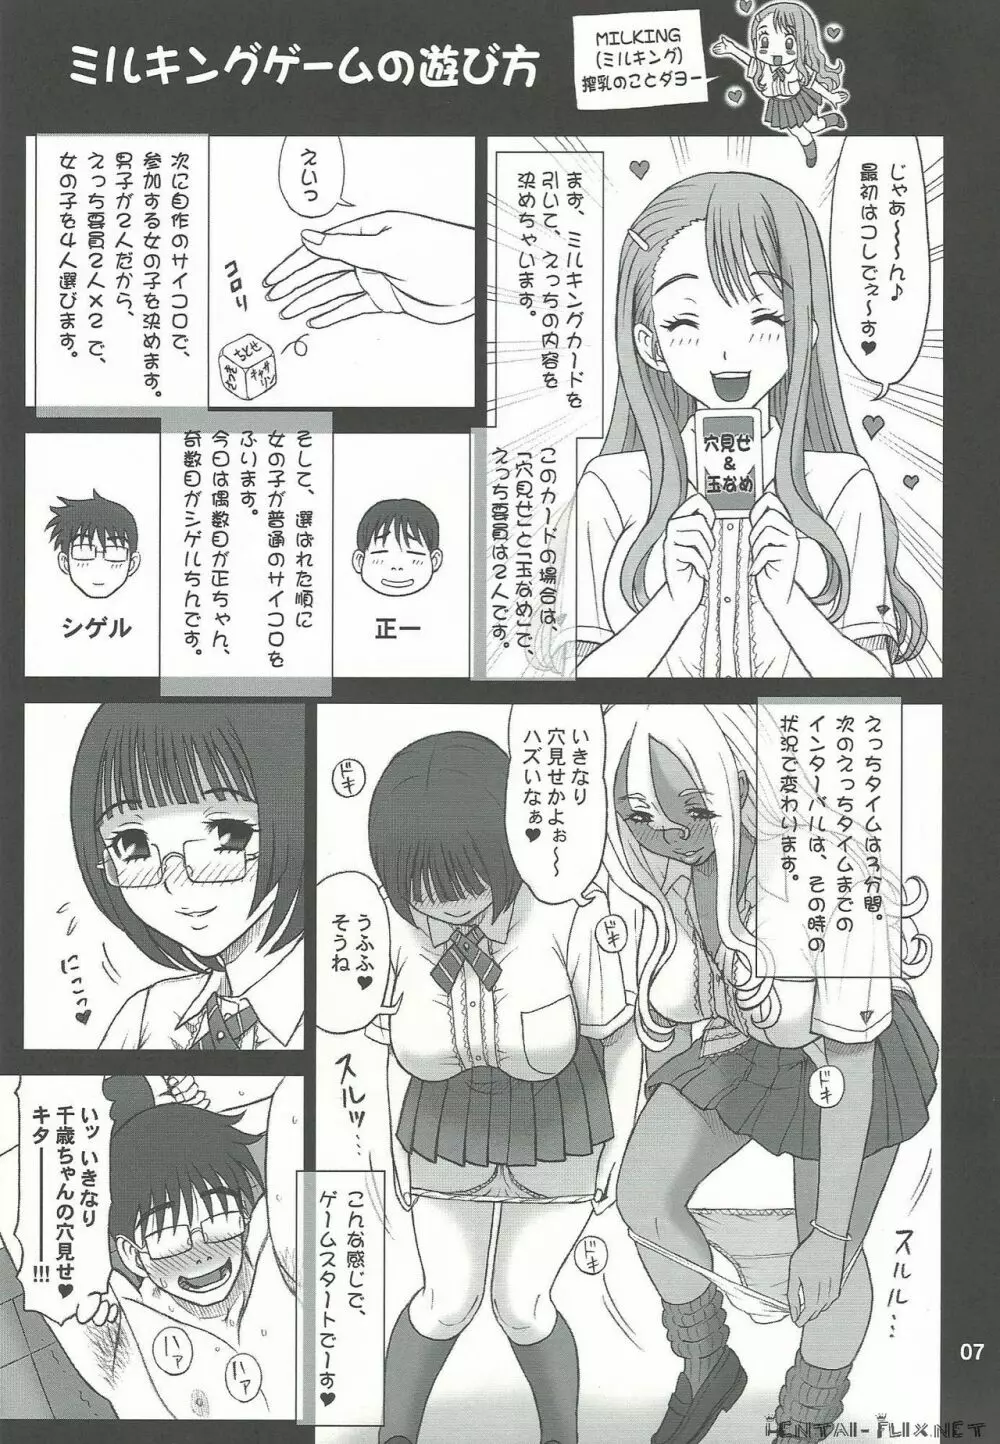 29回転 搾精遊戯 ミルキングゲームJK - page7